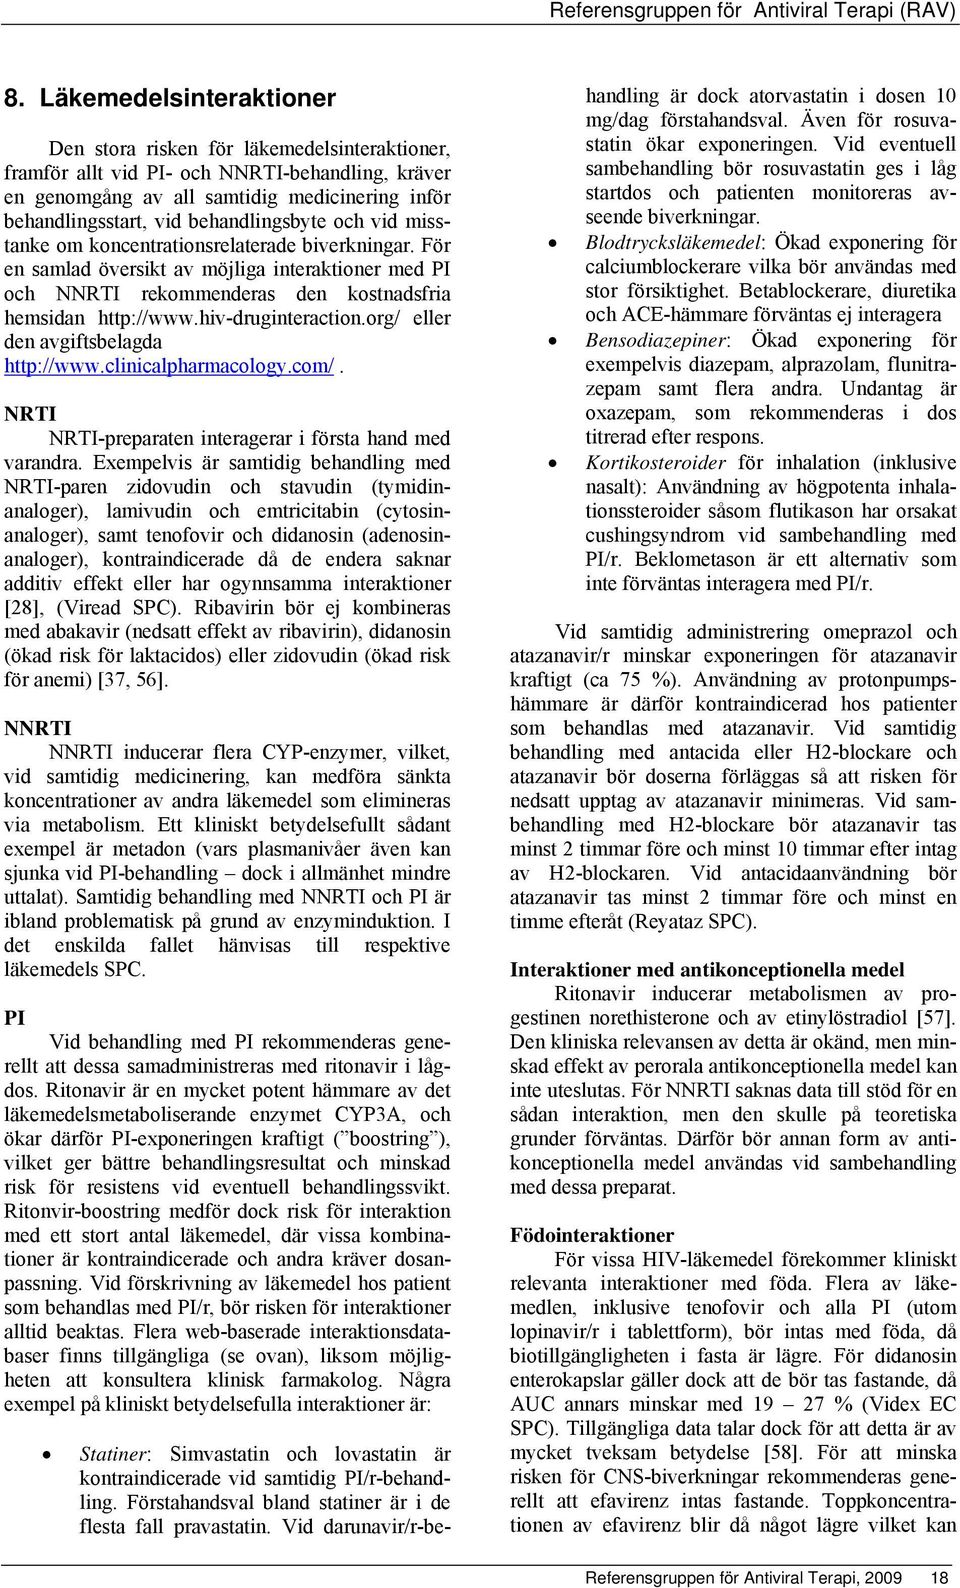 hiv-druginteraction.org/ eller den avgiftsbelagda http://www.clinicalpharmacology.com/. NRTI NRTI-preparaten interagerar i första hand med varandra.